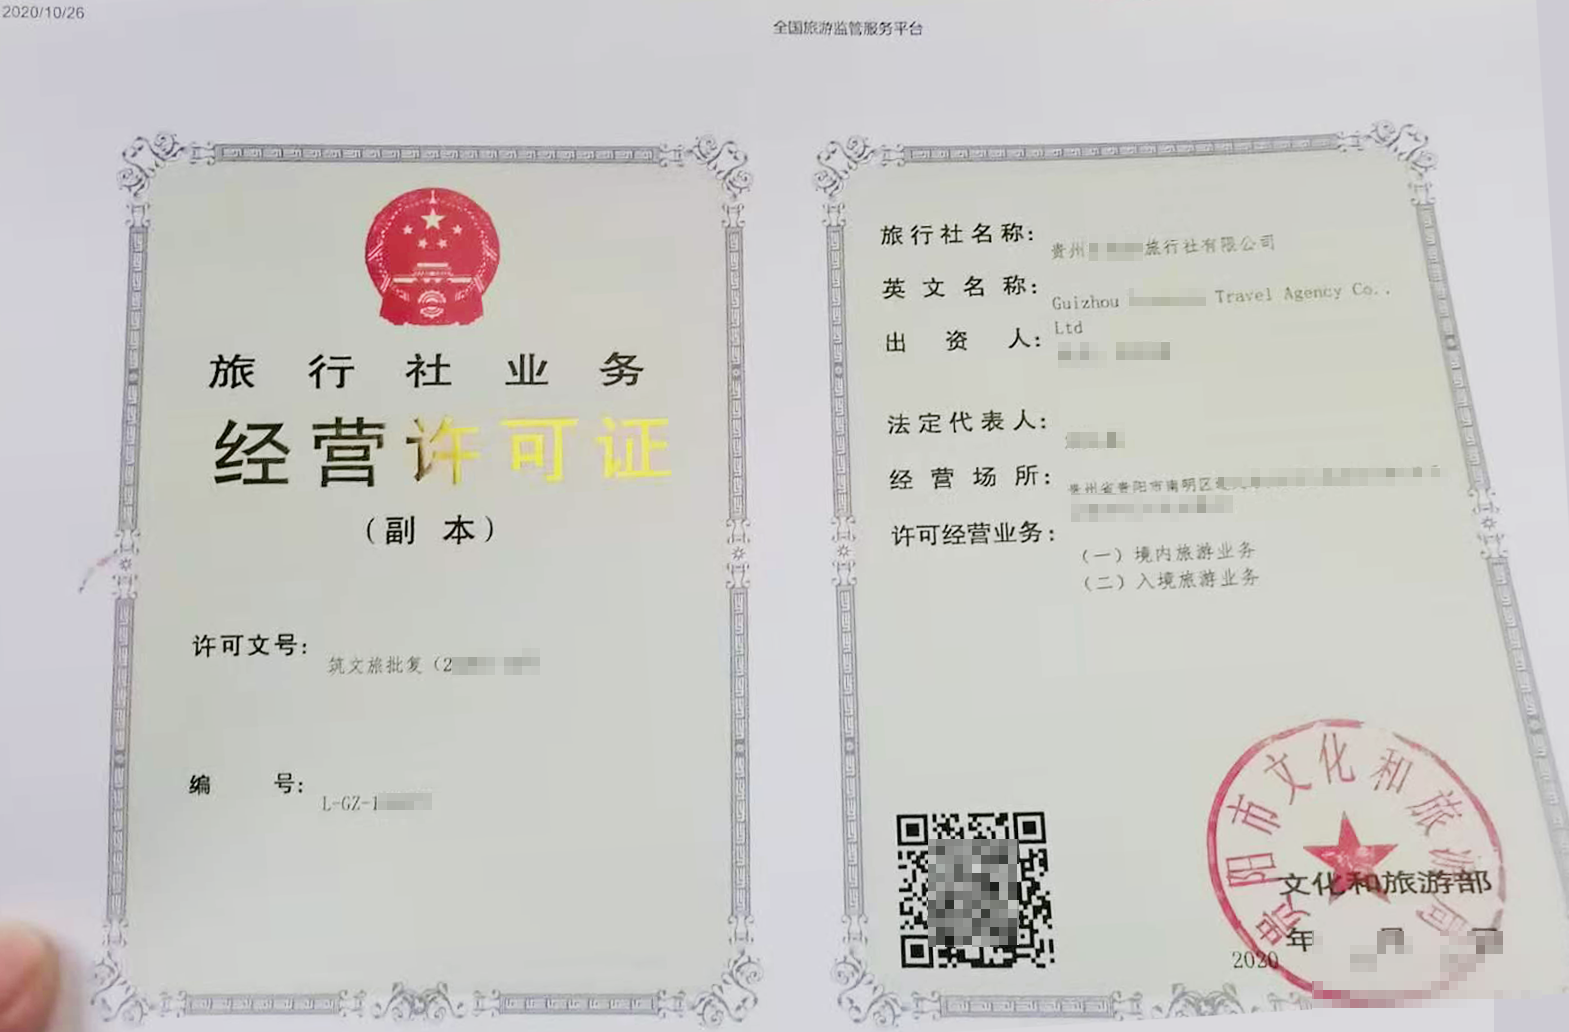 贵州旅行社经营许可证申请